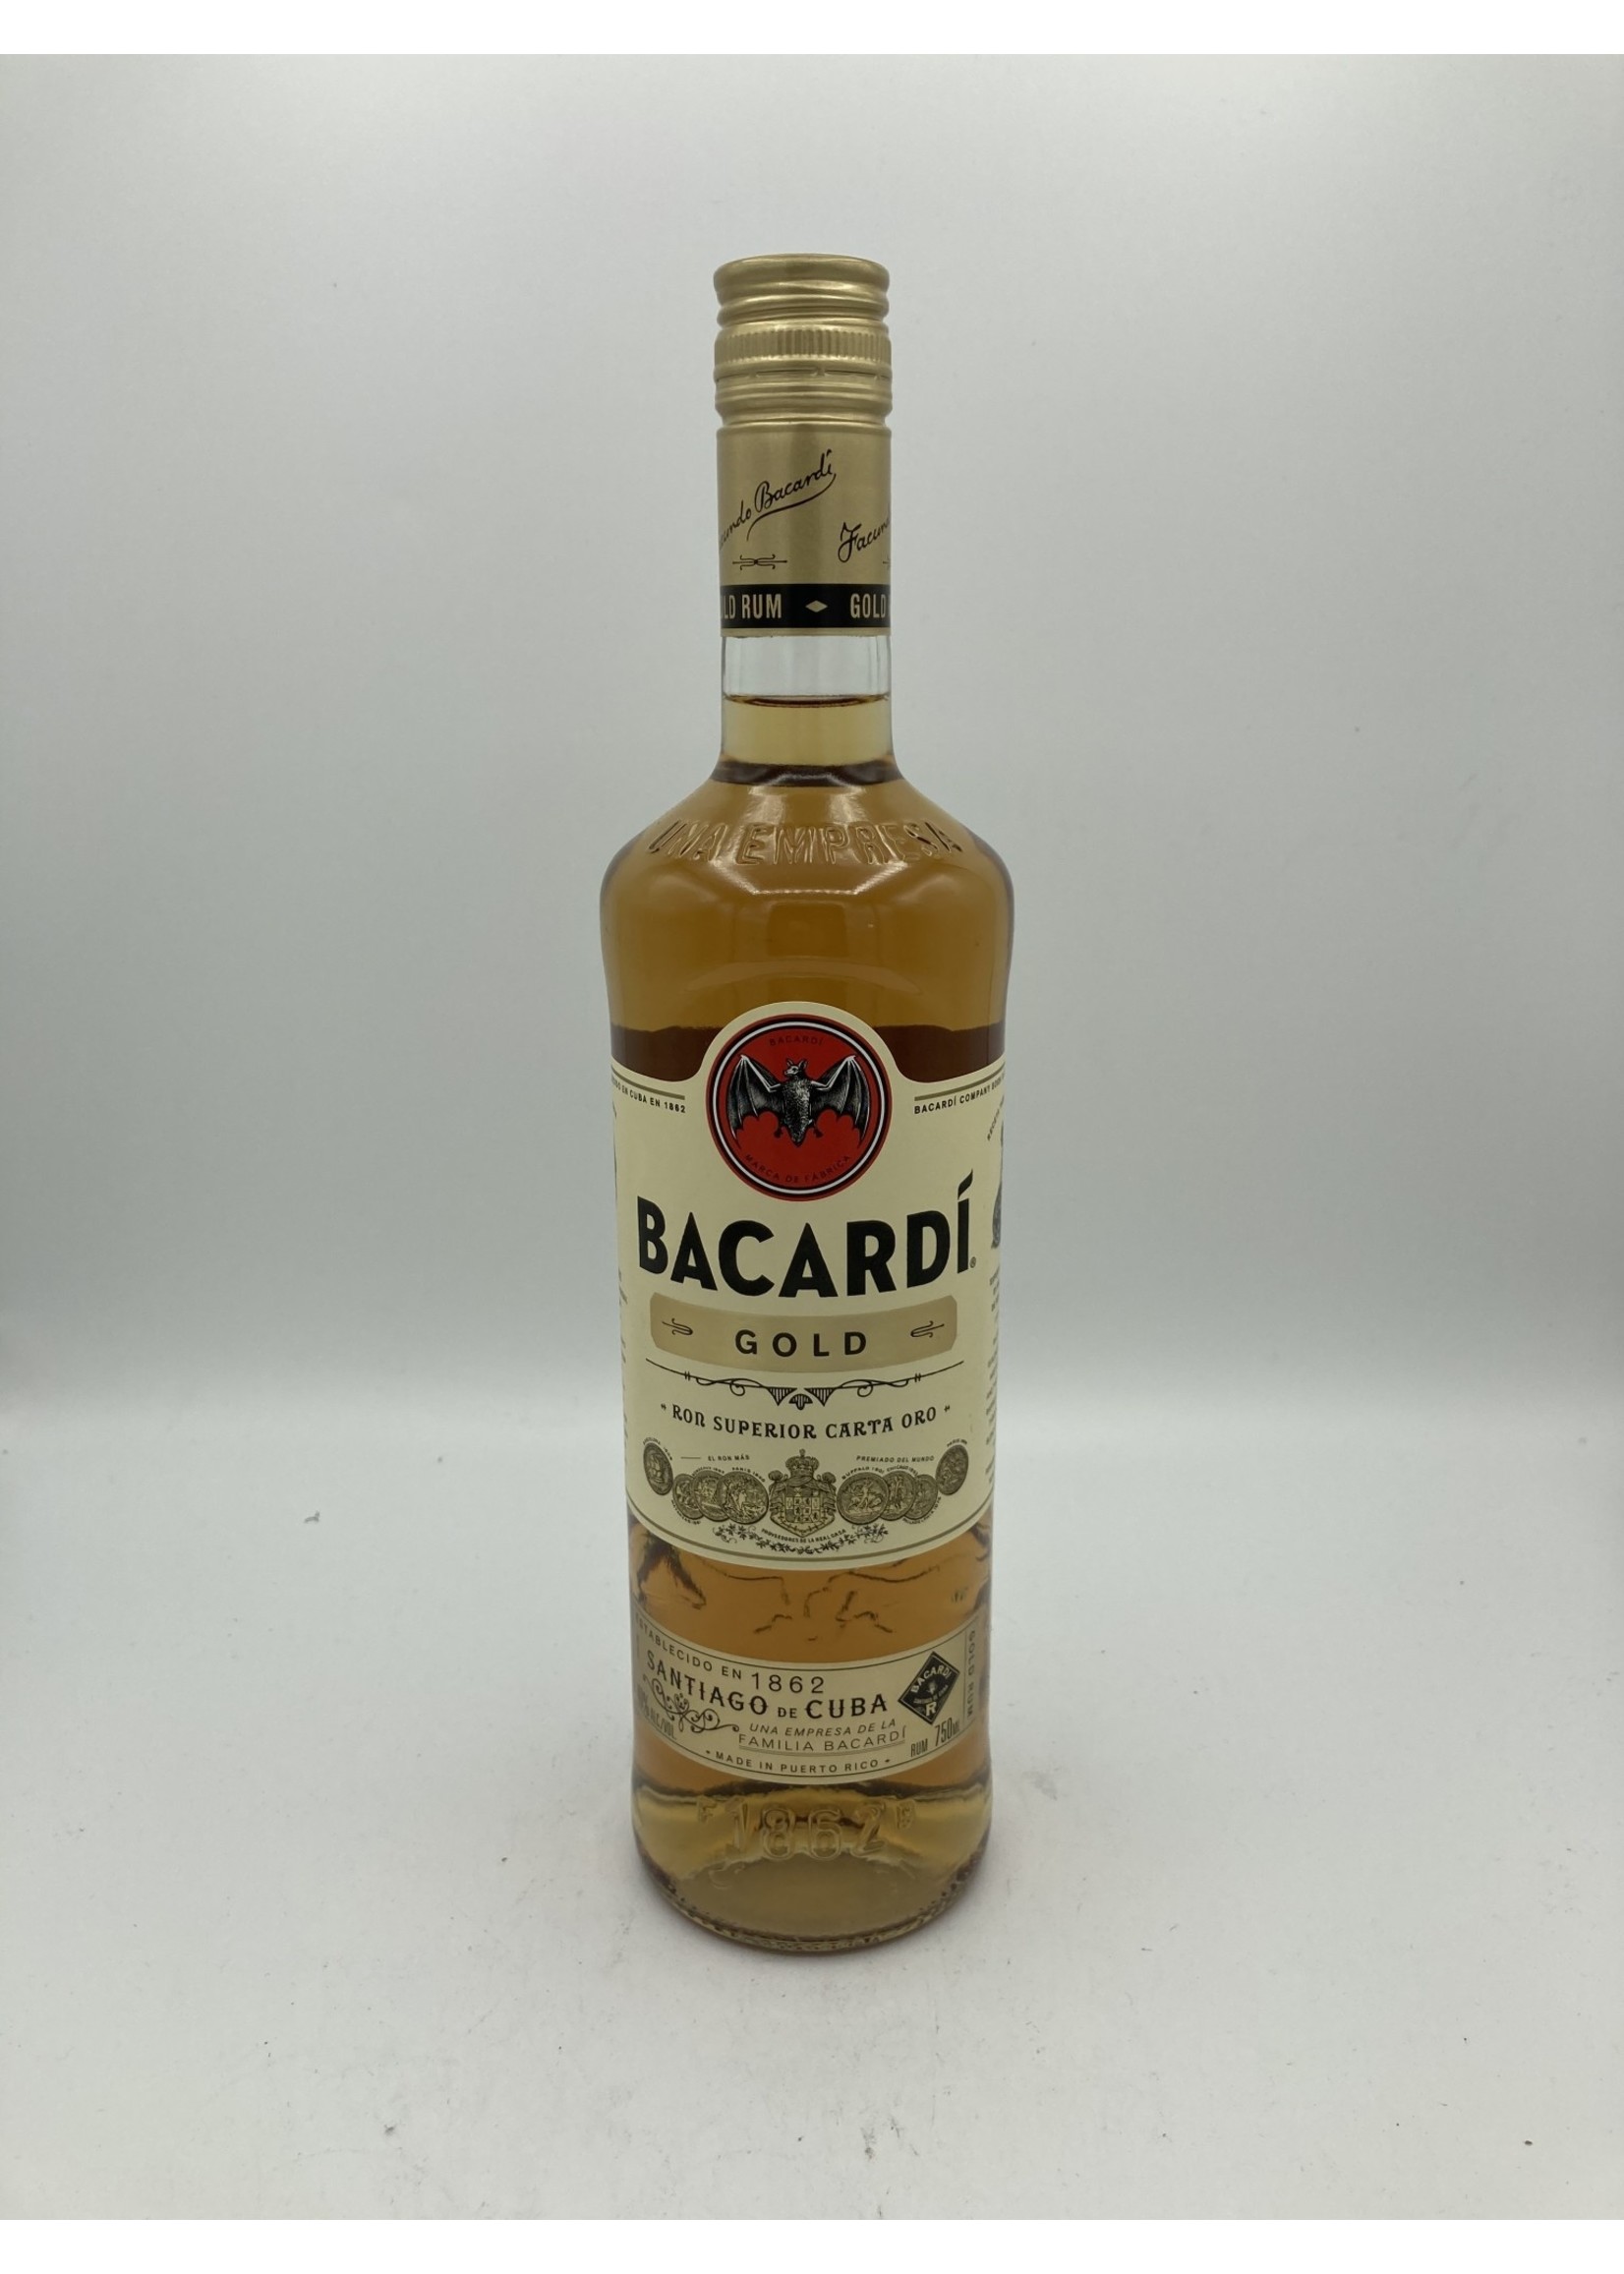 Bacardi Superior Rum Proof: 80 750 mL